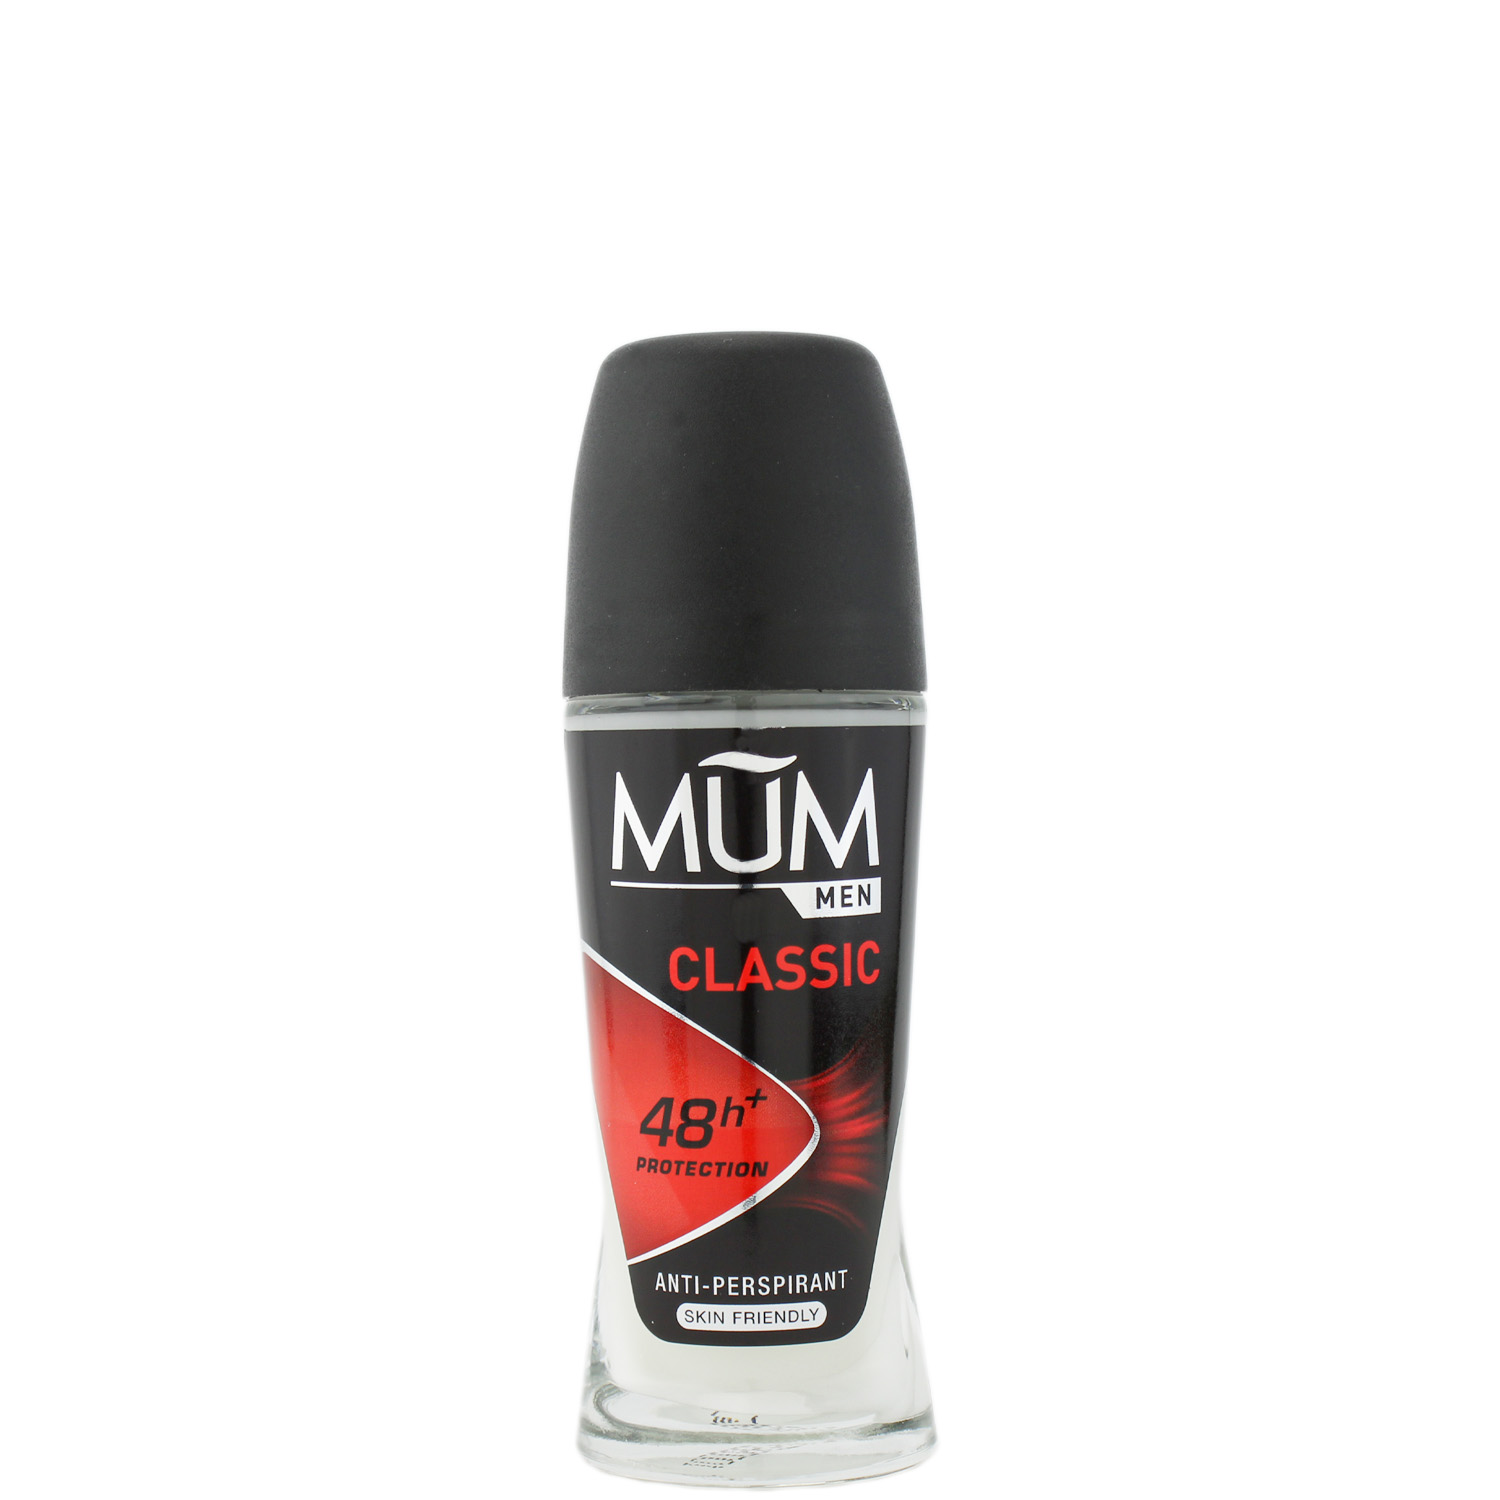 Mum Men Classic 48h+ Antitranspirant Deodorant Roll-On 50ml